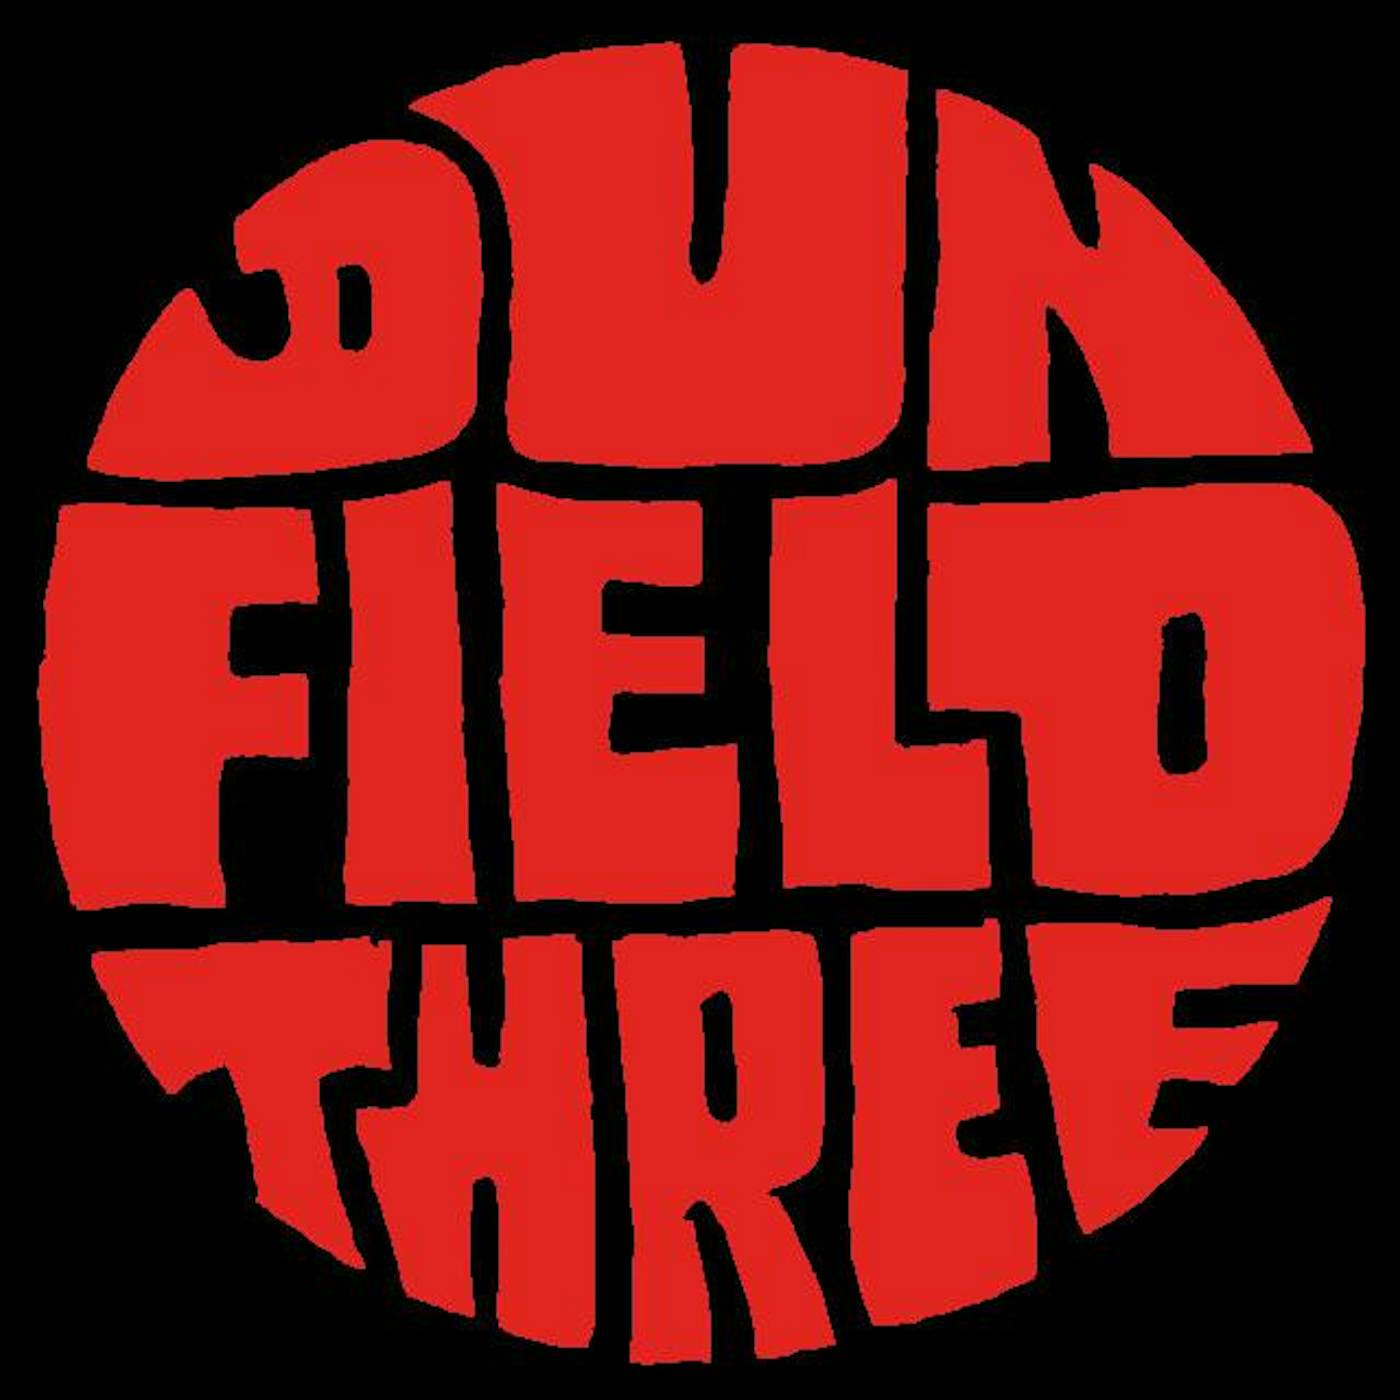 Dun Field Three